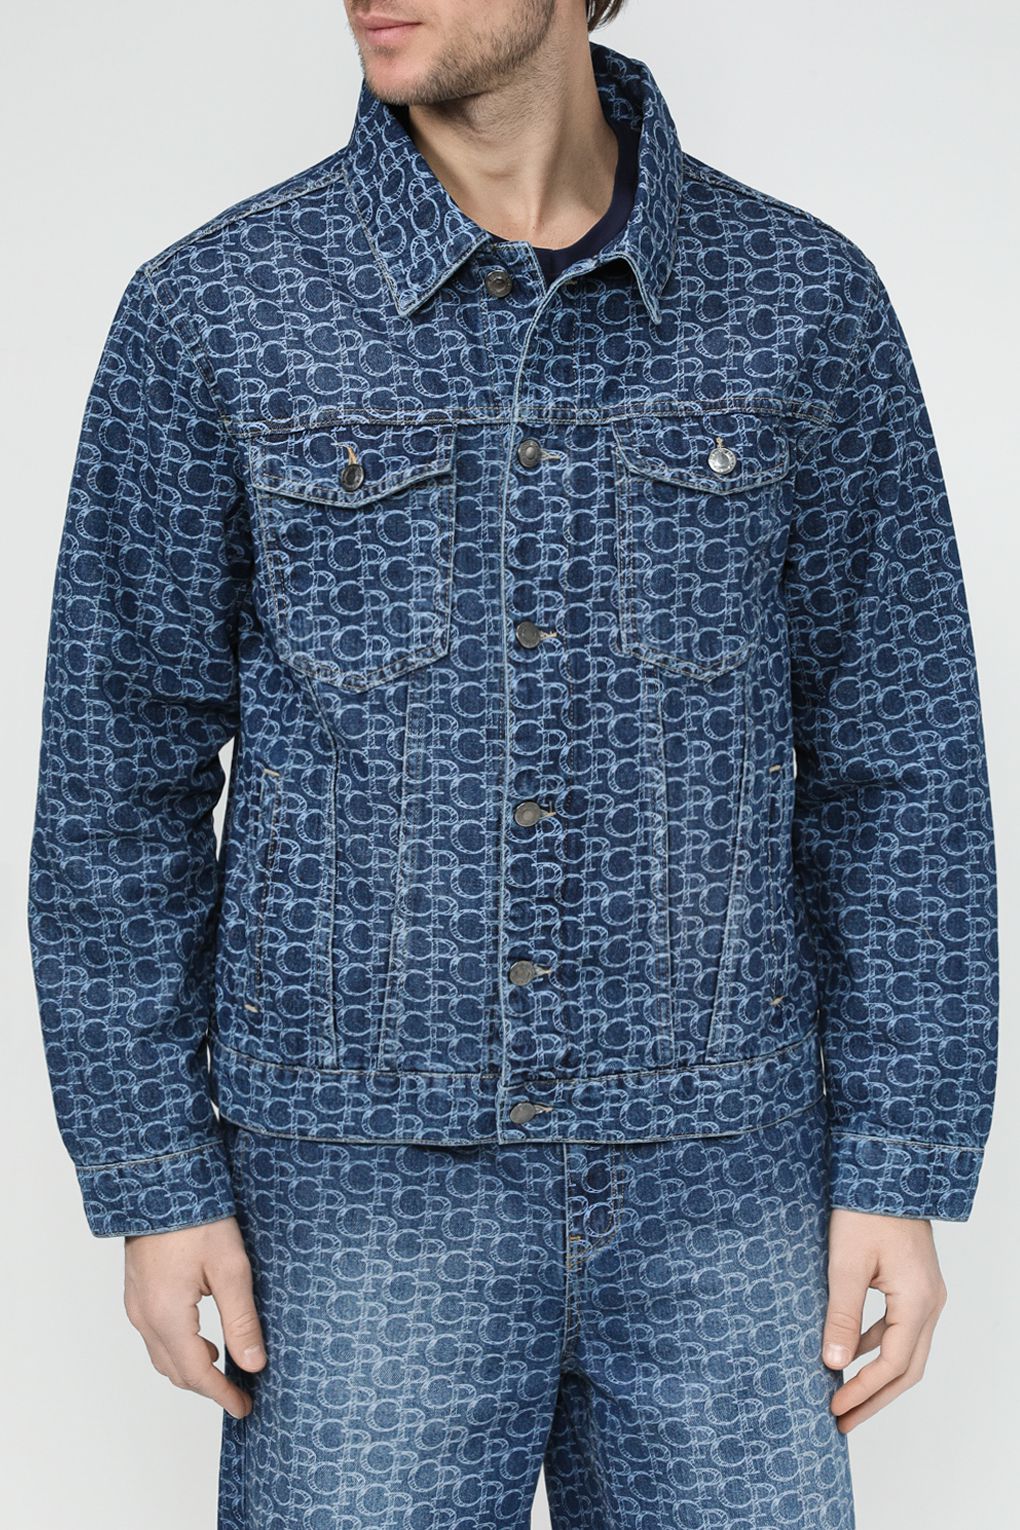 Джинсовая куртка мужская COLORPLAY CP24029348-105 синяя 54 RU